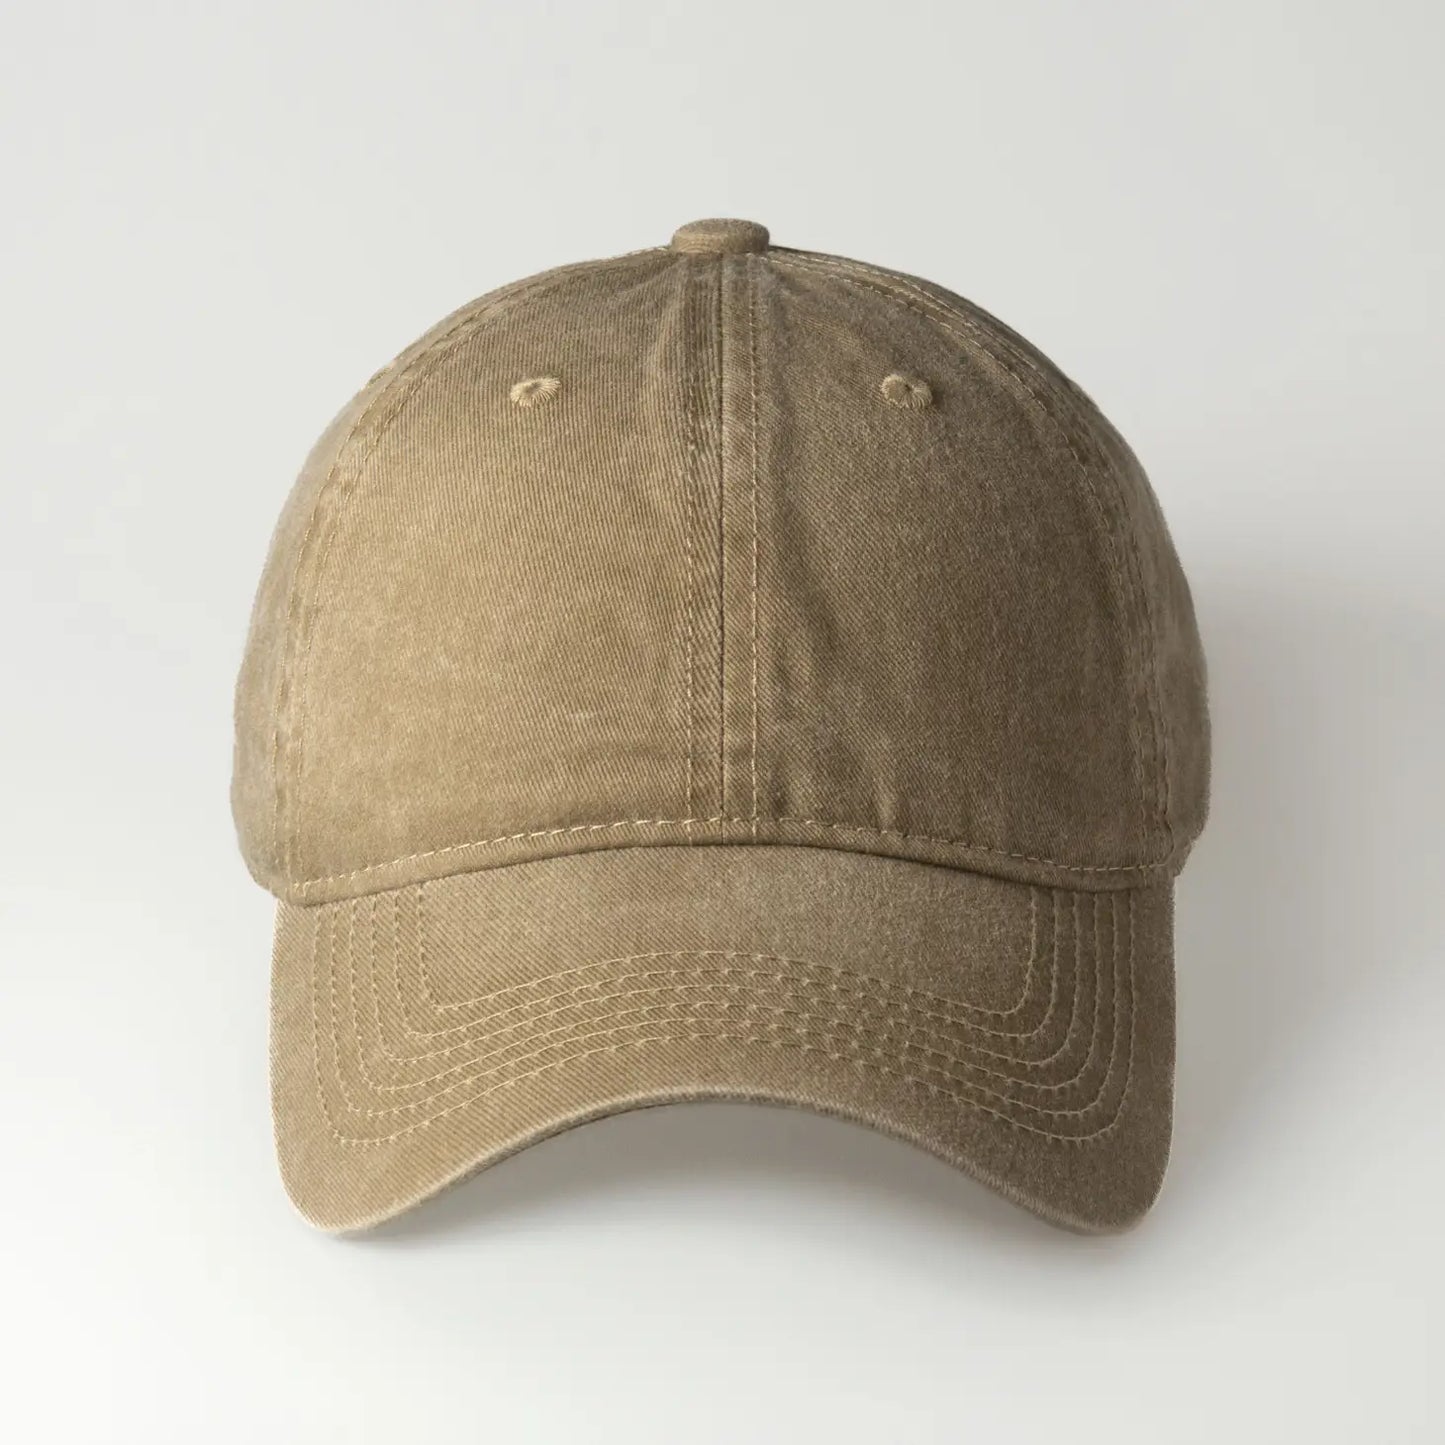 Vintage Twill Baseball Cap - Khaki